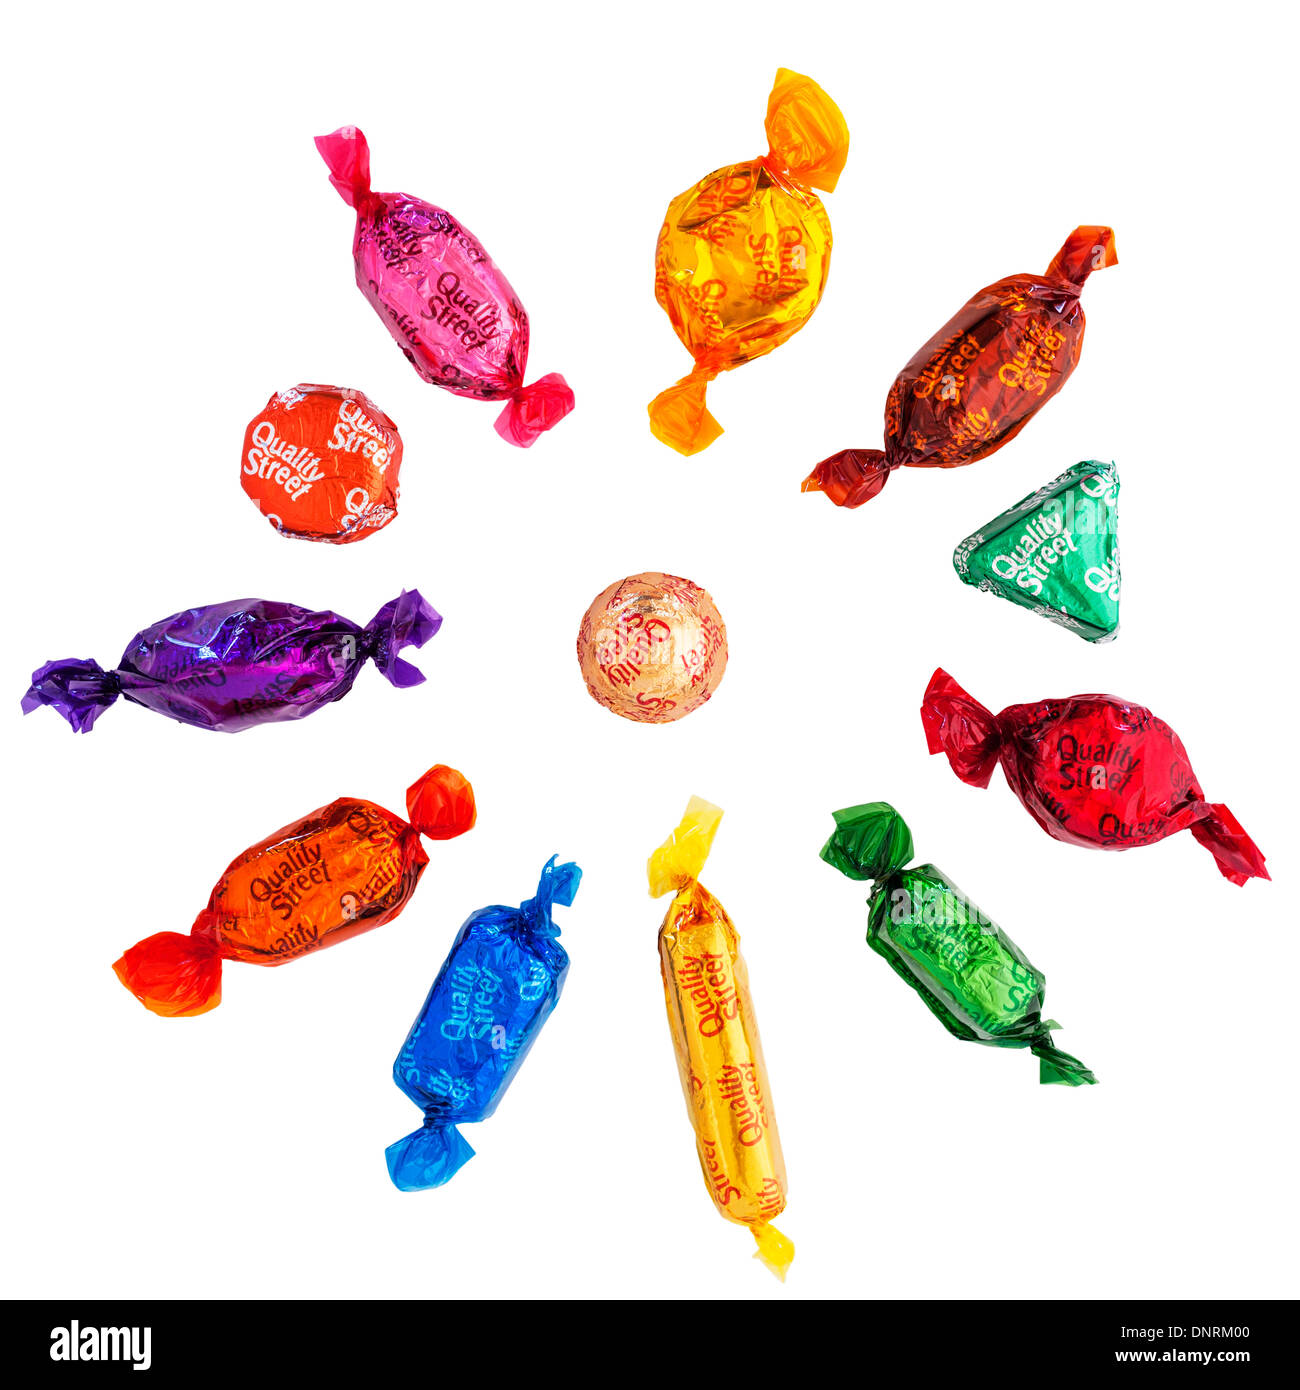 Eine Auswahl von Nestle Quality Street Pralinen Süßigkeiten zeigt jedes einzelnen süß auf weißem Hintergrund Stockfoto